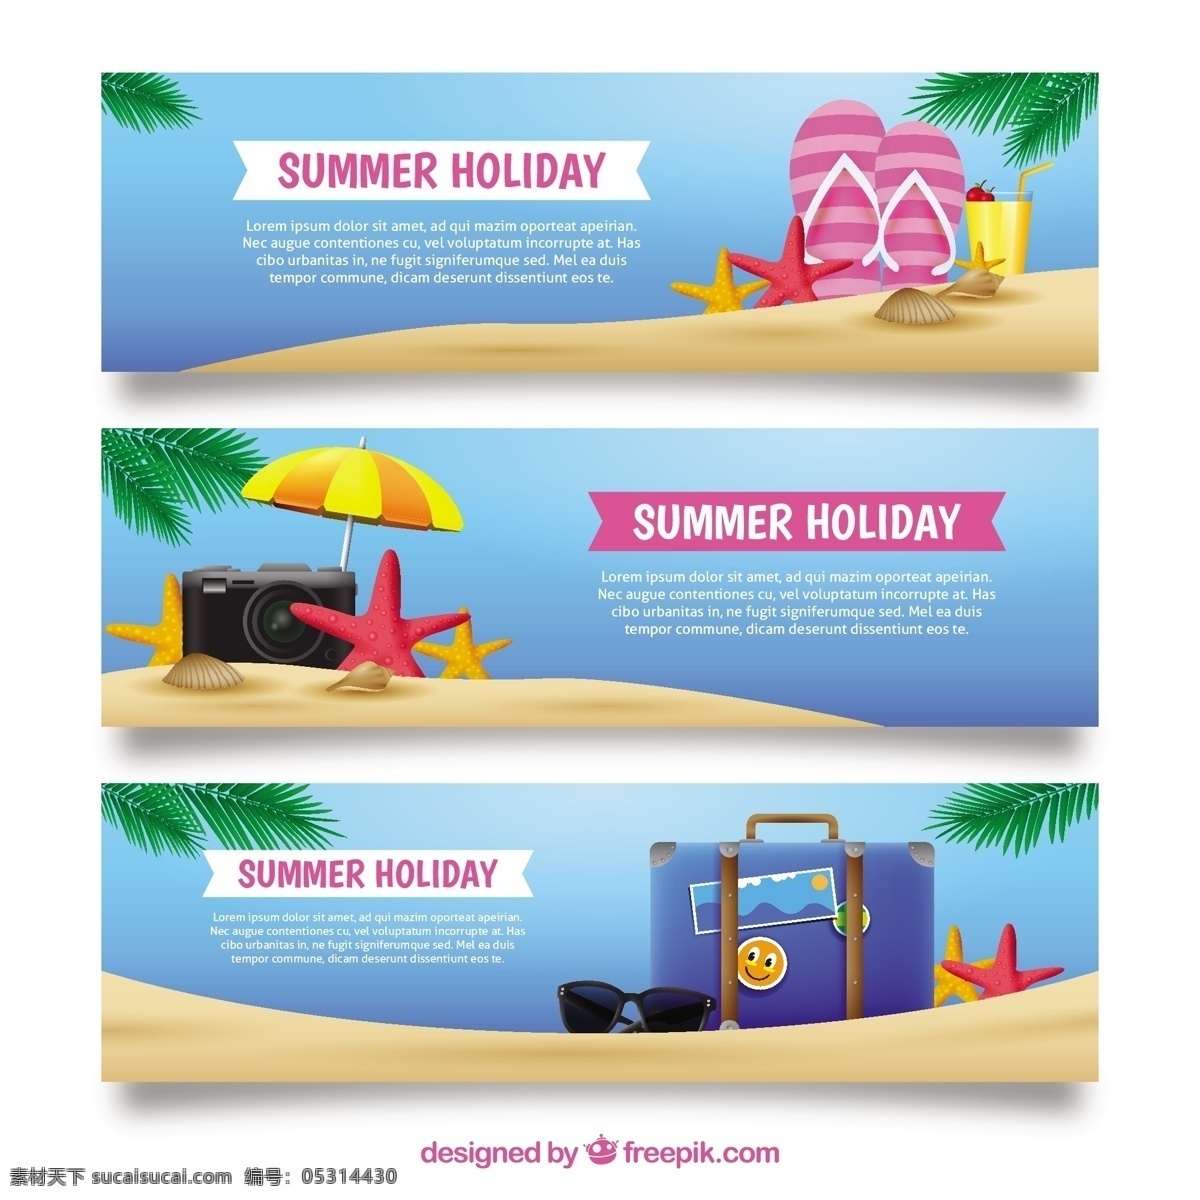 三 横幅 现实 夏季 项目 集合 旗帜 旅游 海洋 海滩 颜色 树叶 度假 棕榈 沙滩 手提箱 夏季海滩 季节 海星 收集 物体